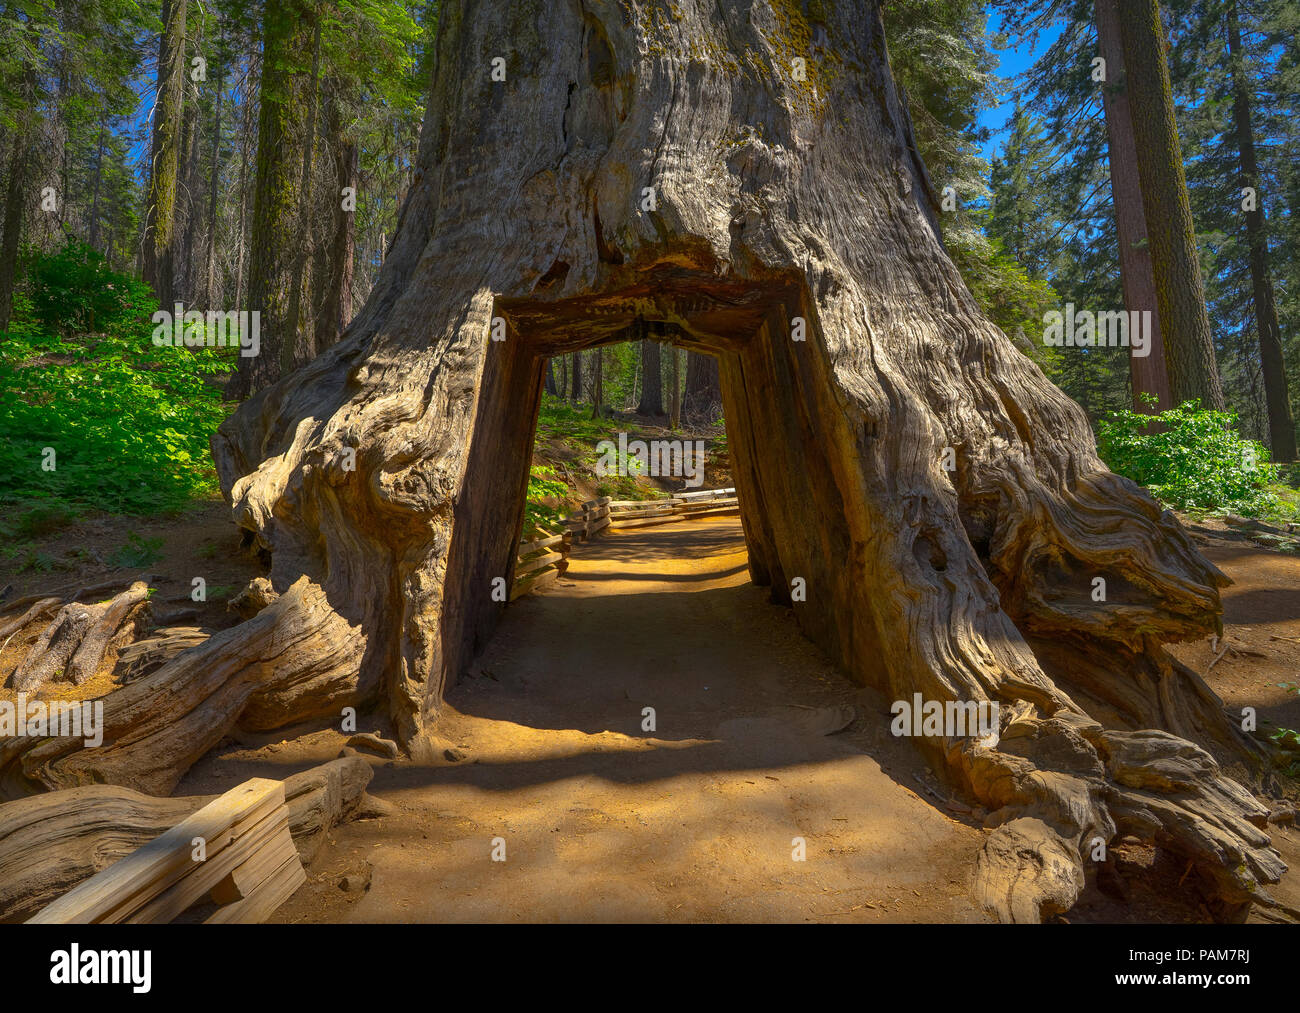 Le Tunnel Tree, un chemin de terre et coupe du trou dans le tronc d'un séquoia massif Tuolumne Grove sur Trail - Yosemite National Park Banque D'Images